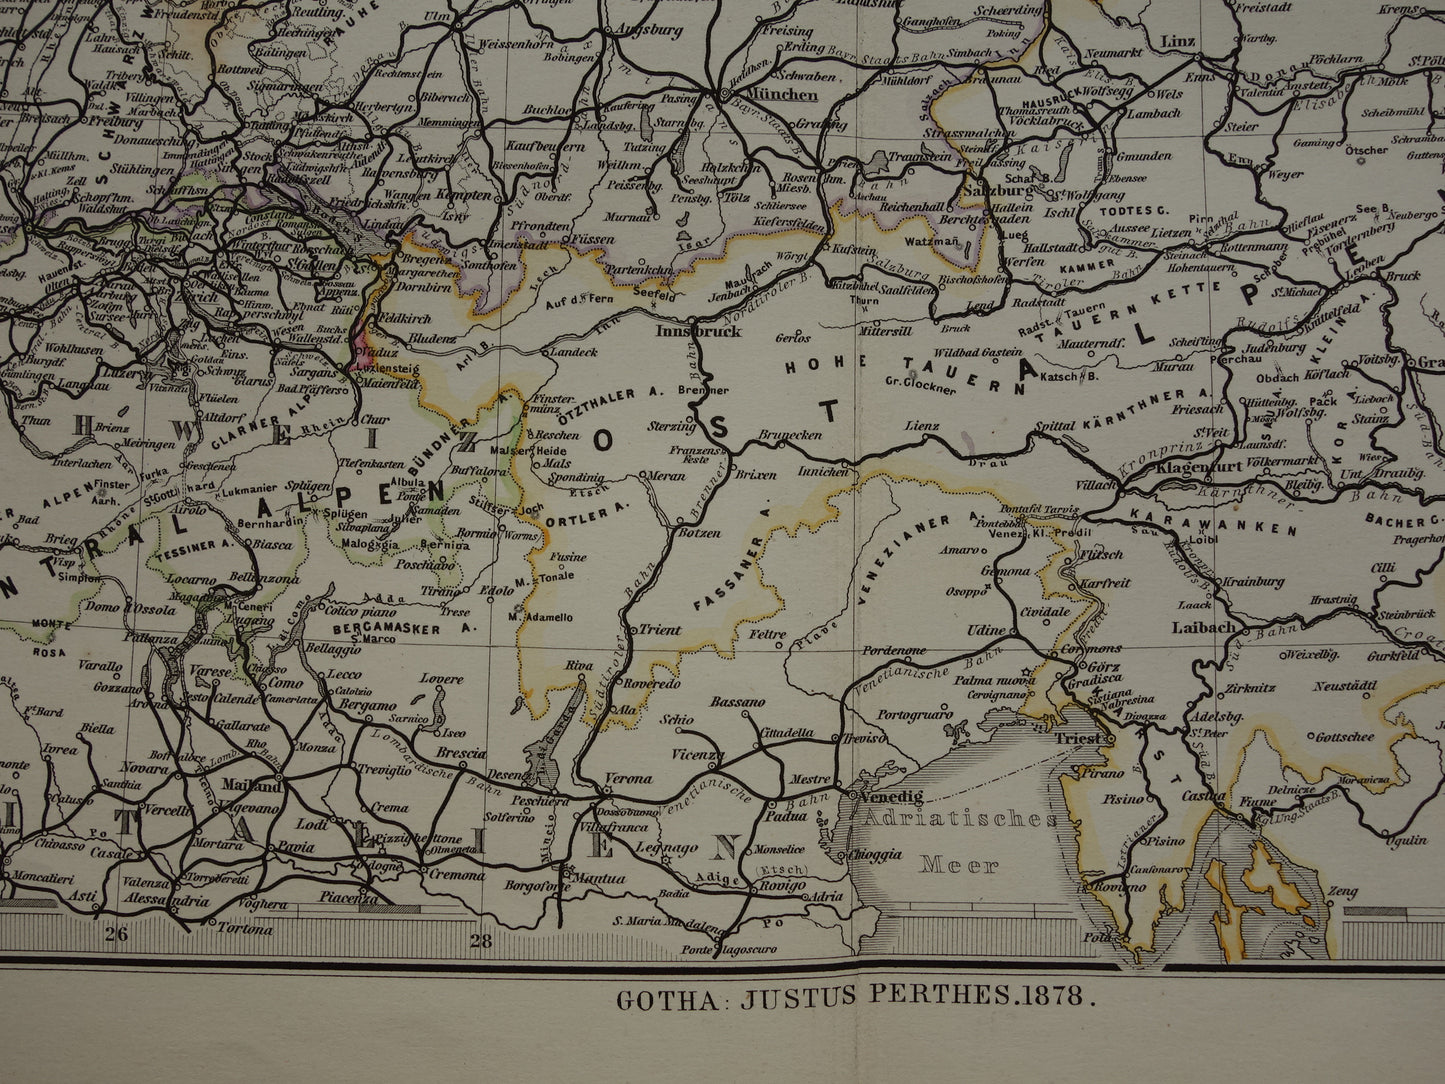 Antieke kaart van Spoorwegen in Nederland Duitsland originele 145+ jaar oude landkaart spoorlijnen centraal Europa spoorkaart